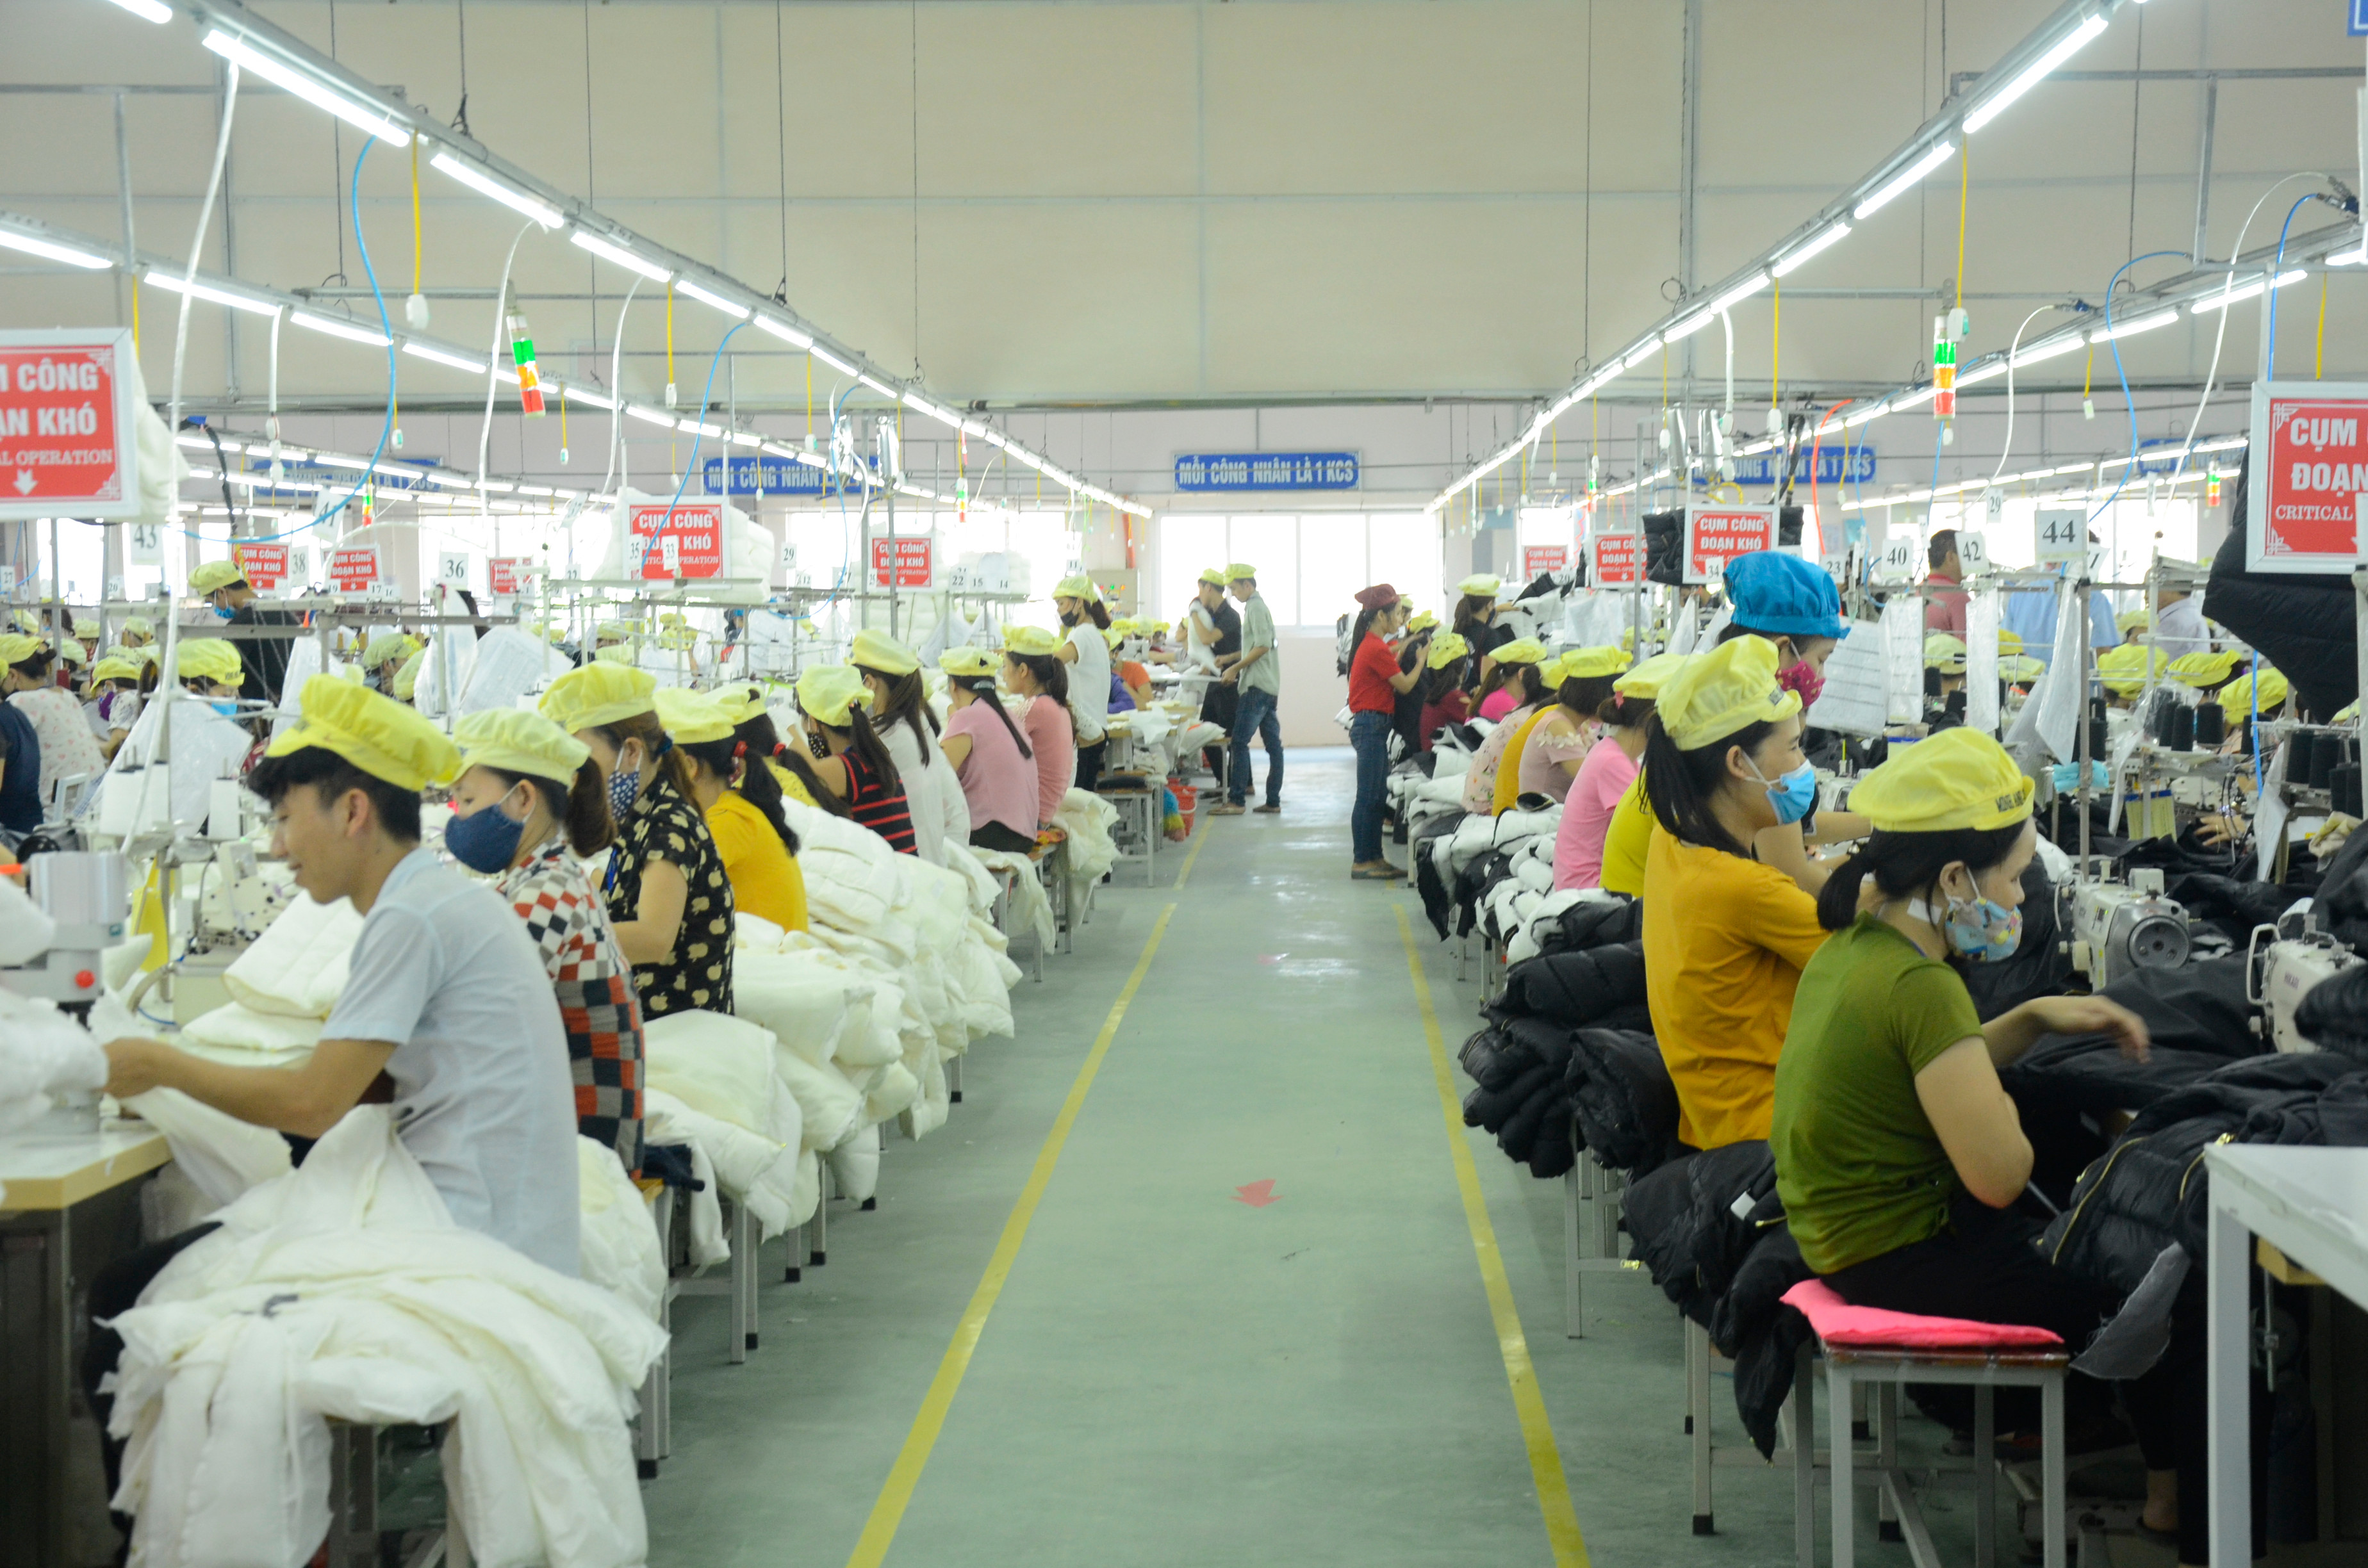 Dây chuyền sản xuất tại Nhà máy Minh Anh. Ảnh: Thanh Lê